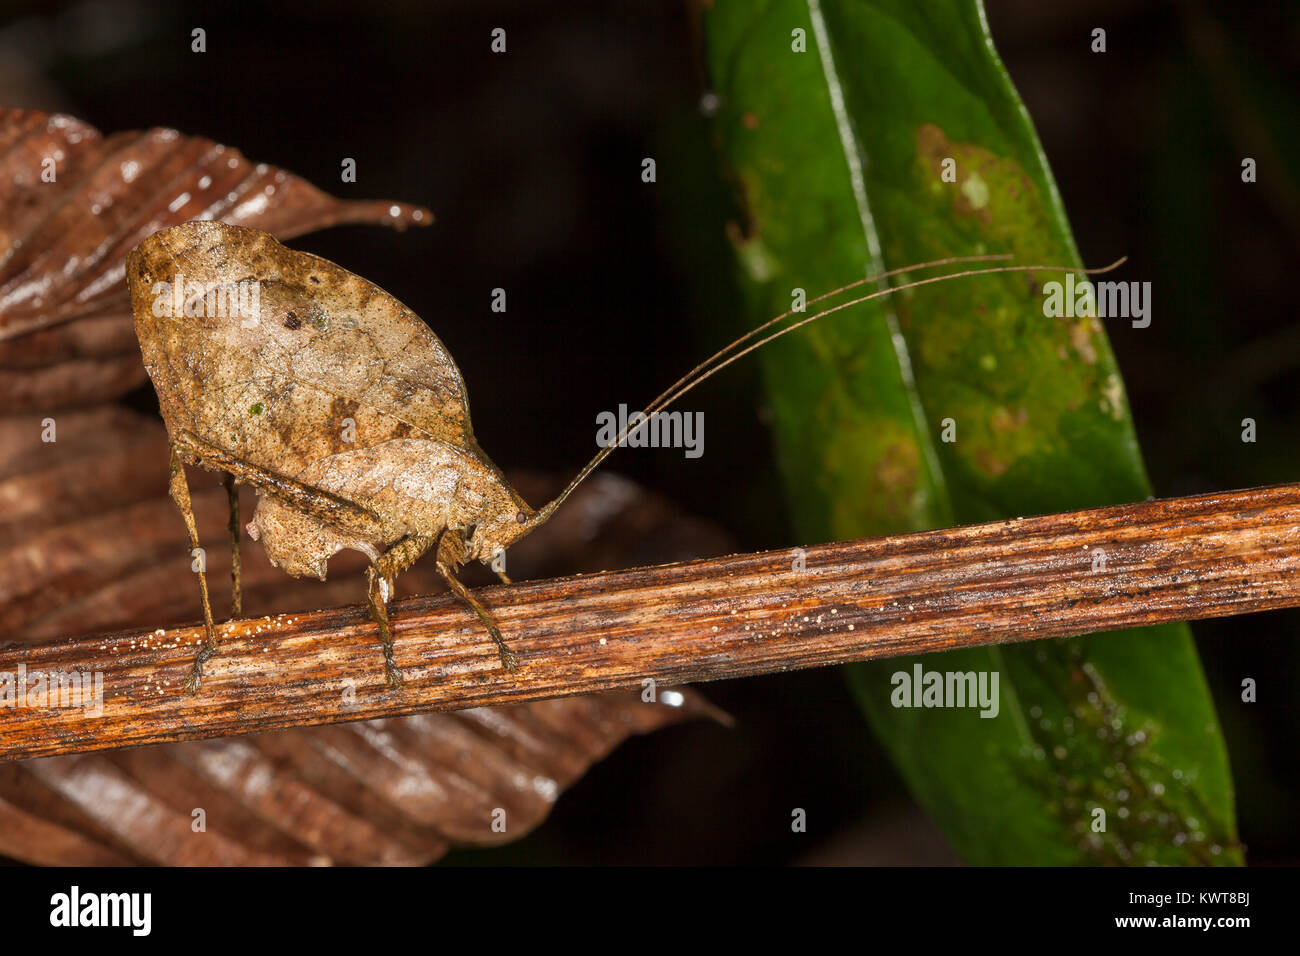 Eine gut getarnte tote Blätter imitieren, katydid (Orthoptera, Familie Tettigoniidae) ovipositing (Eier) in einem Stamm. Tieflandregenwälder von Stockfoto